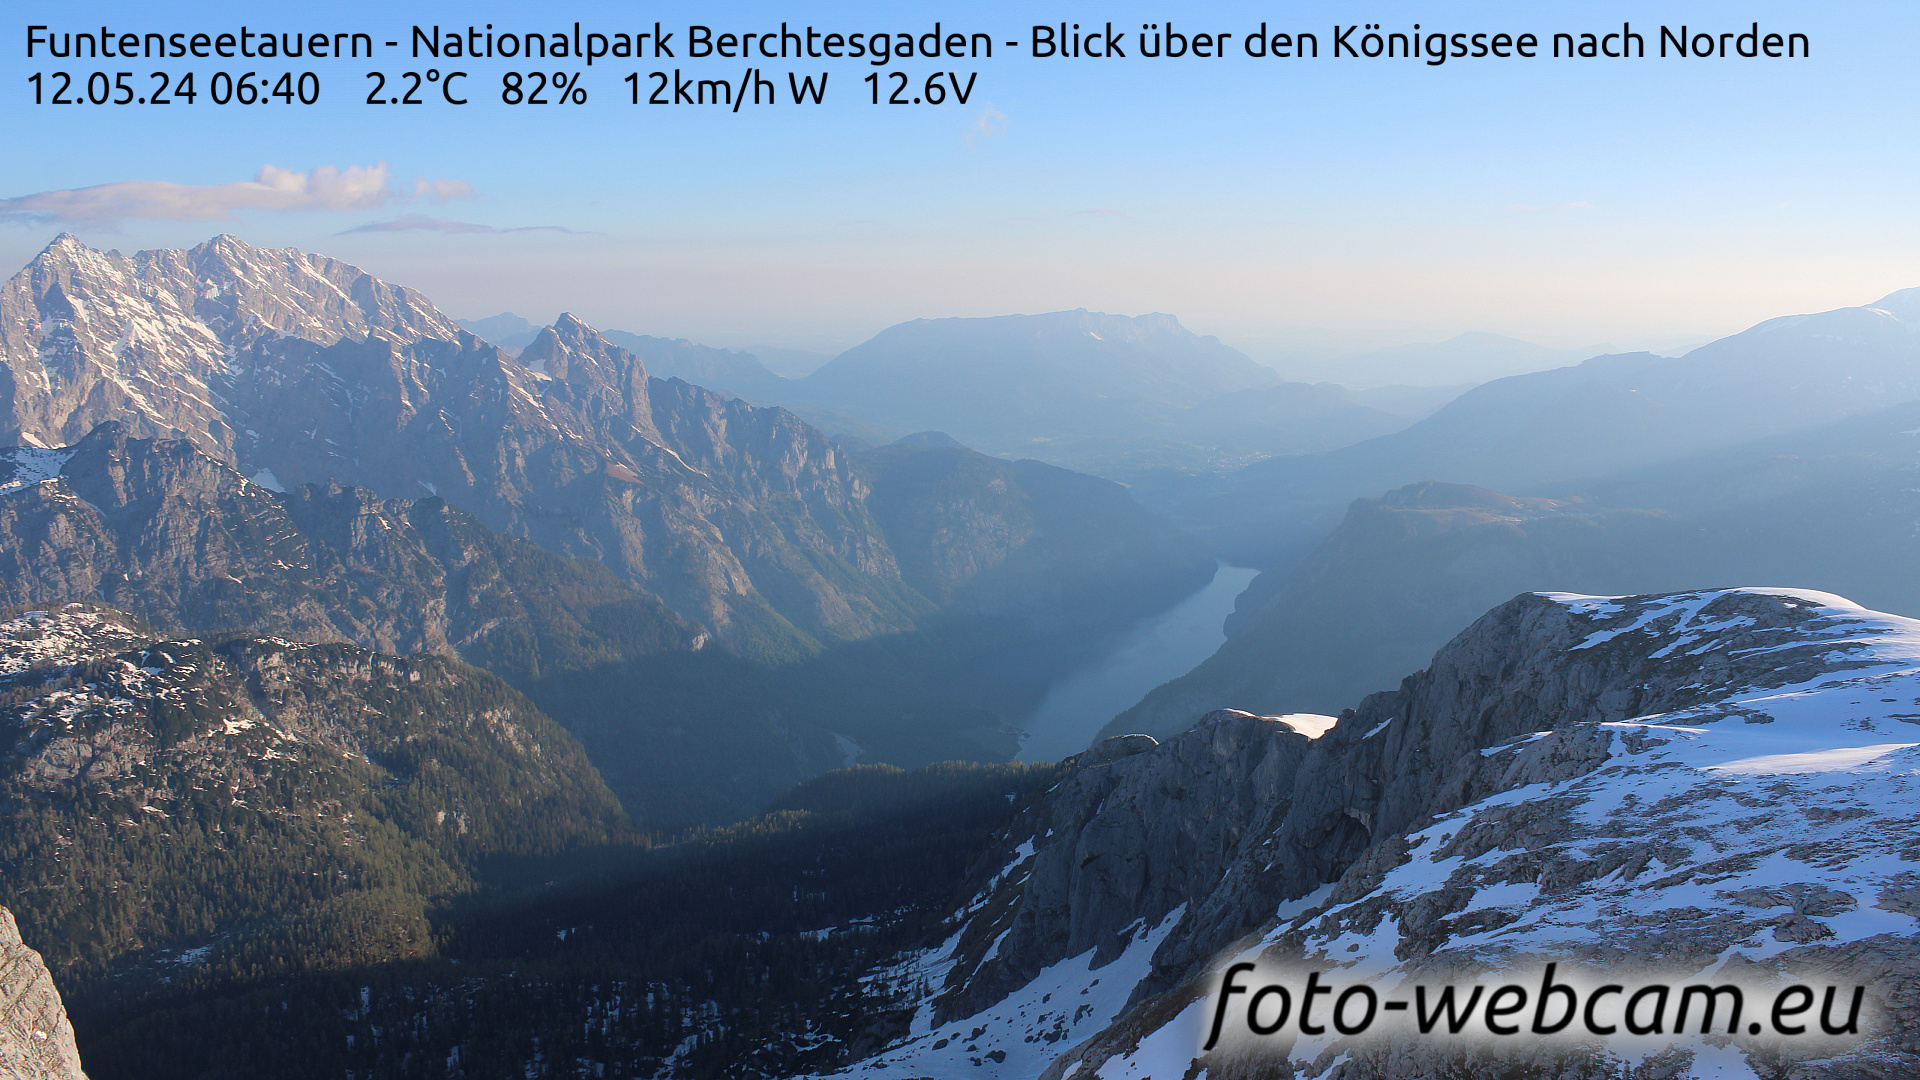 Berchtesgaden Fri. 06:48